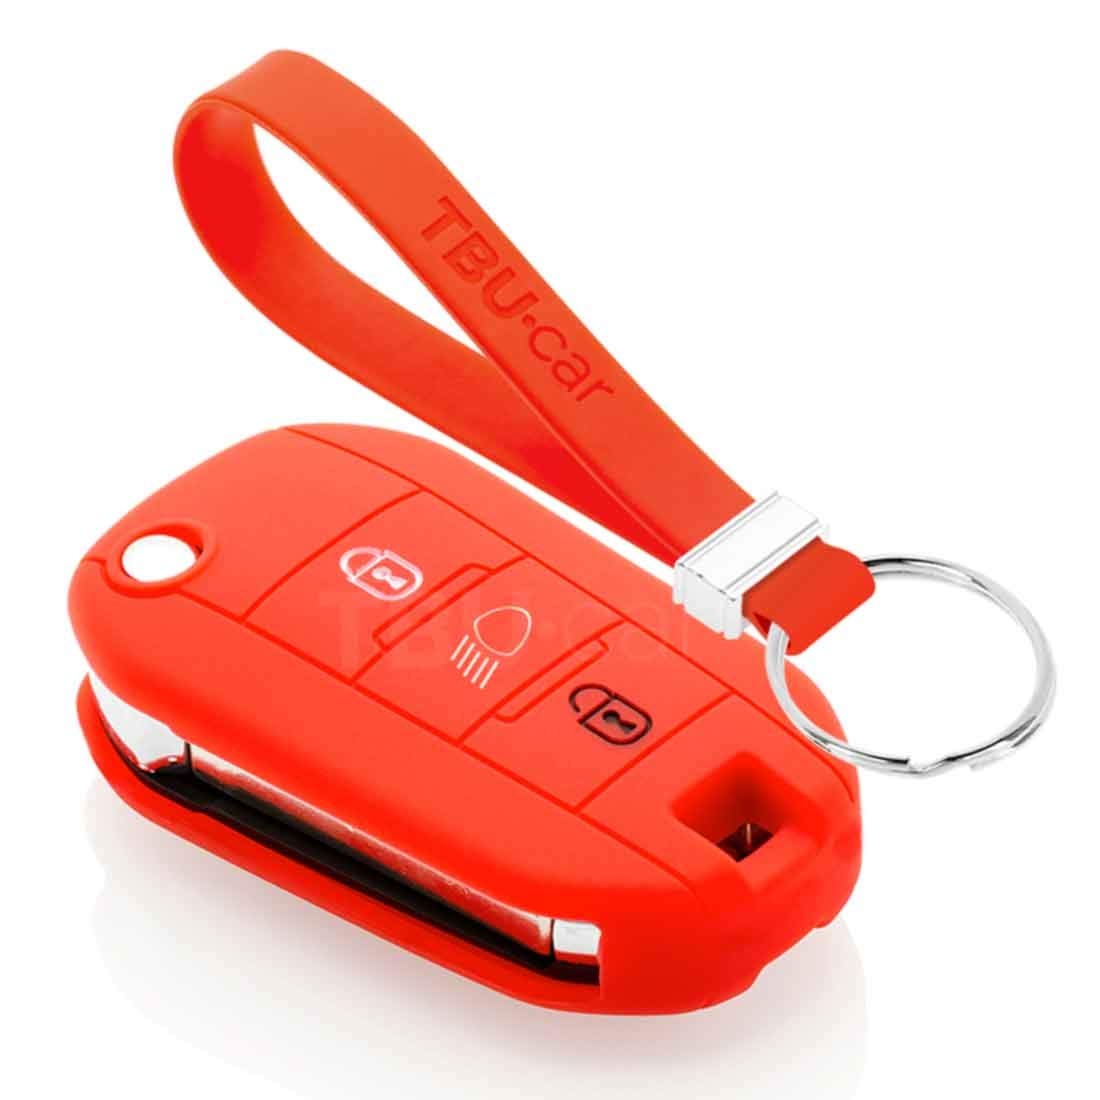 TBU car Autoschlüssel Hülle kompatibel mit Citroën 3 Tasten (Licht Taste) - Schutzhülle aus Silikon - Auto Schlüsselhülle Cover in Rot von TBU car